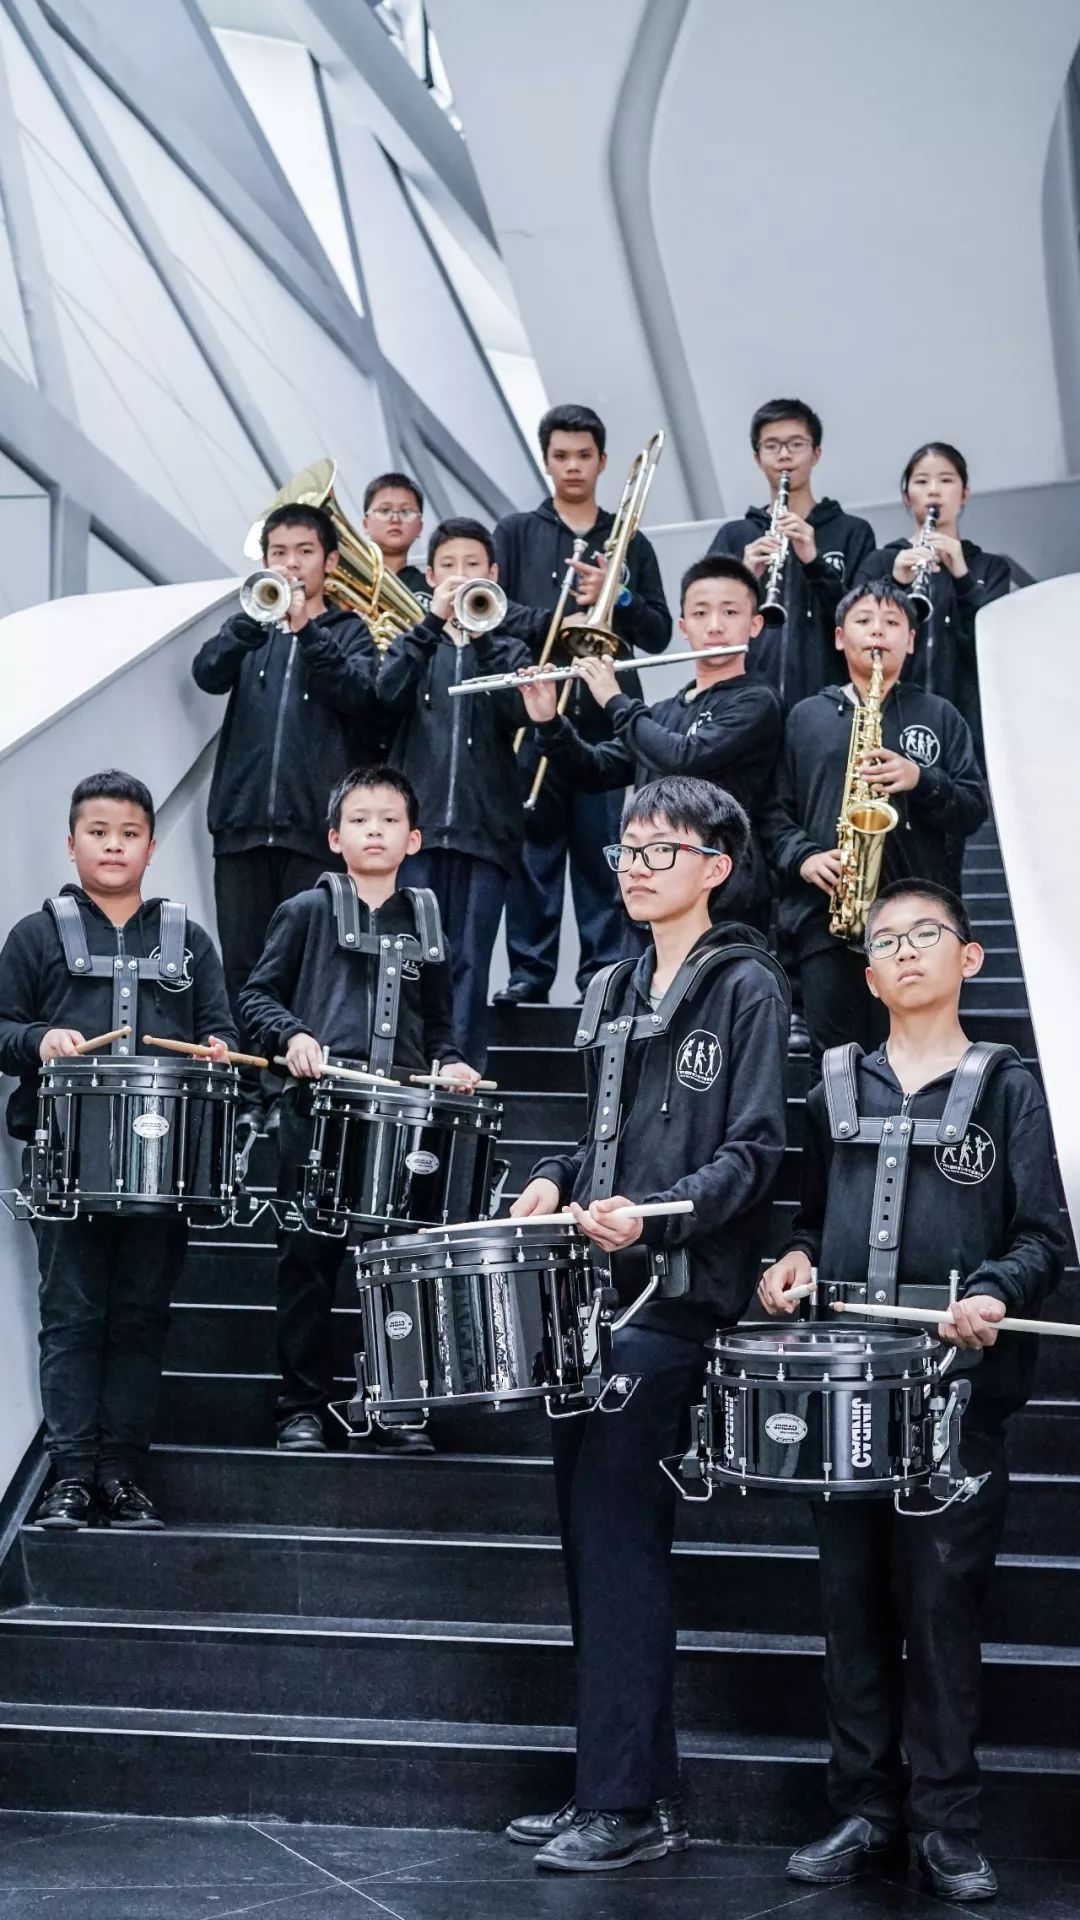 最后召集丨 广州大剧院青少年行进管乐团2018秋季增补团员招募